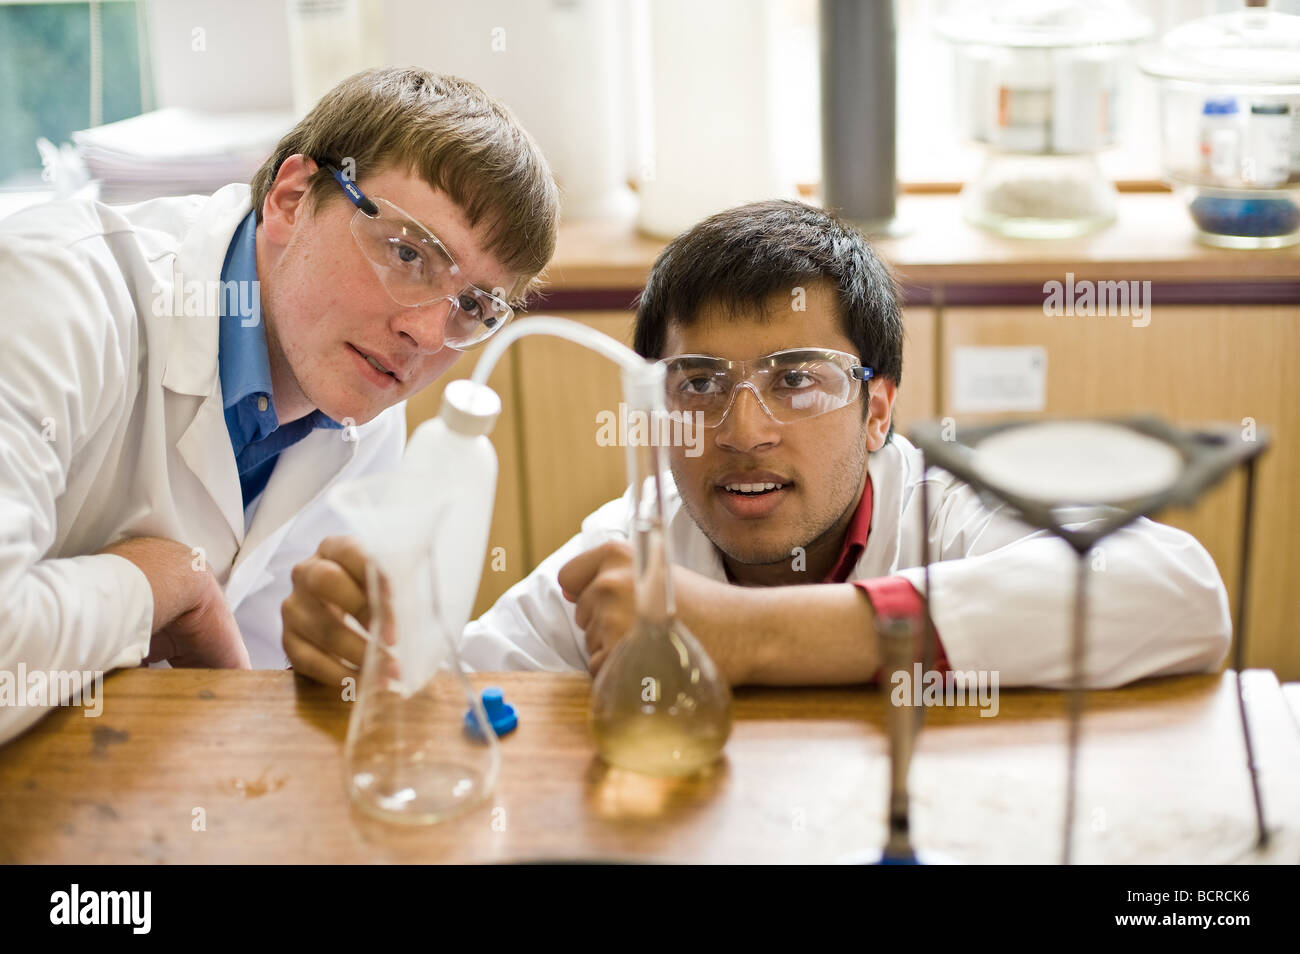 UK School England Grammar School Education - deux élèves de sexe masculin versent du liquide dans une expérience dans un laboratoire de sciences scolaires. Banque D'Images